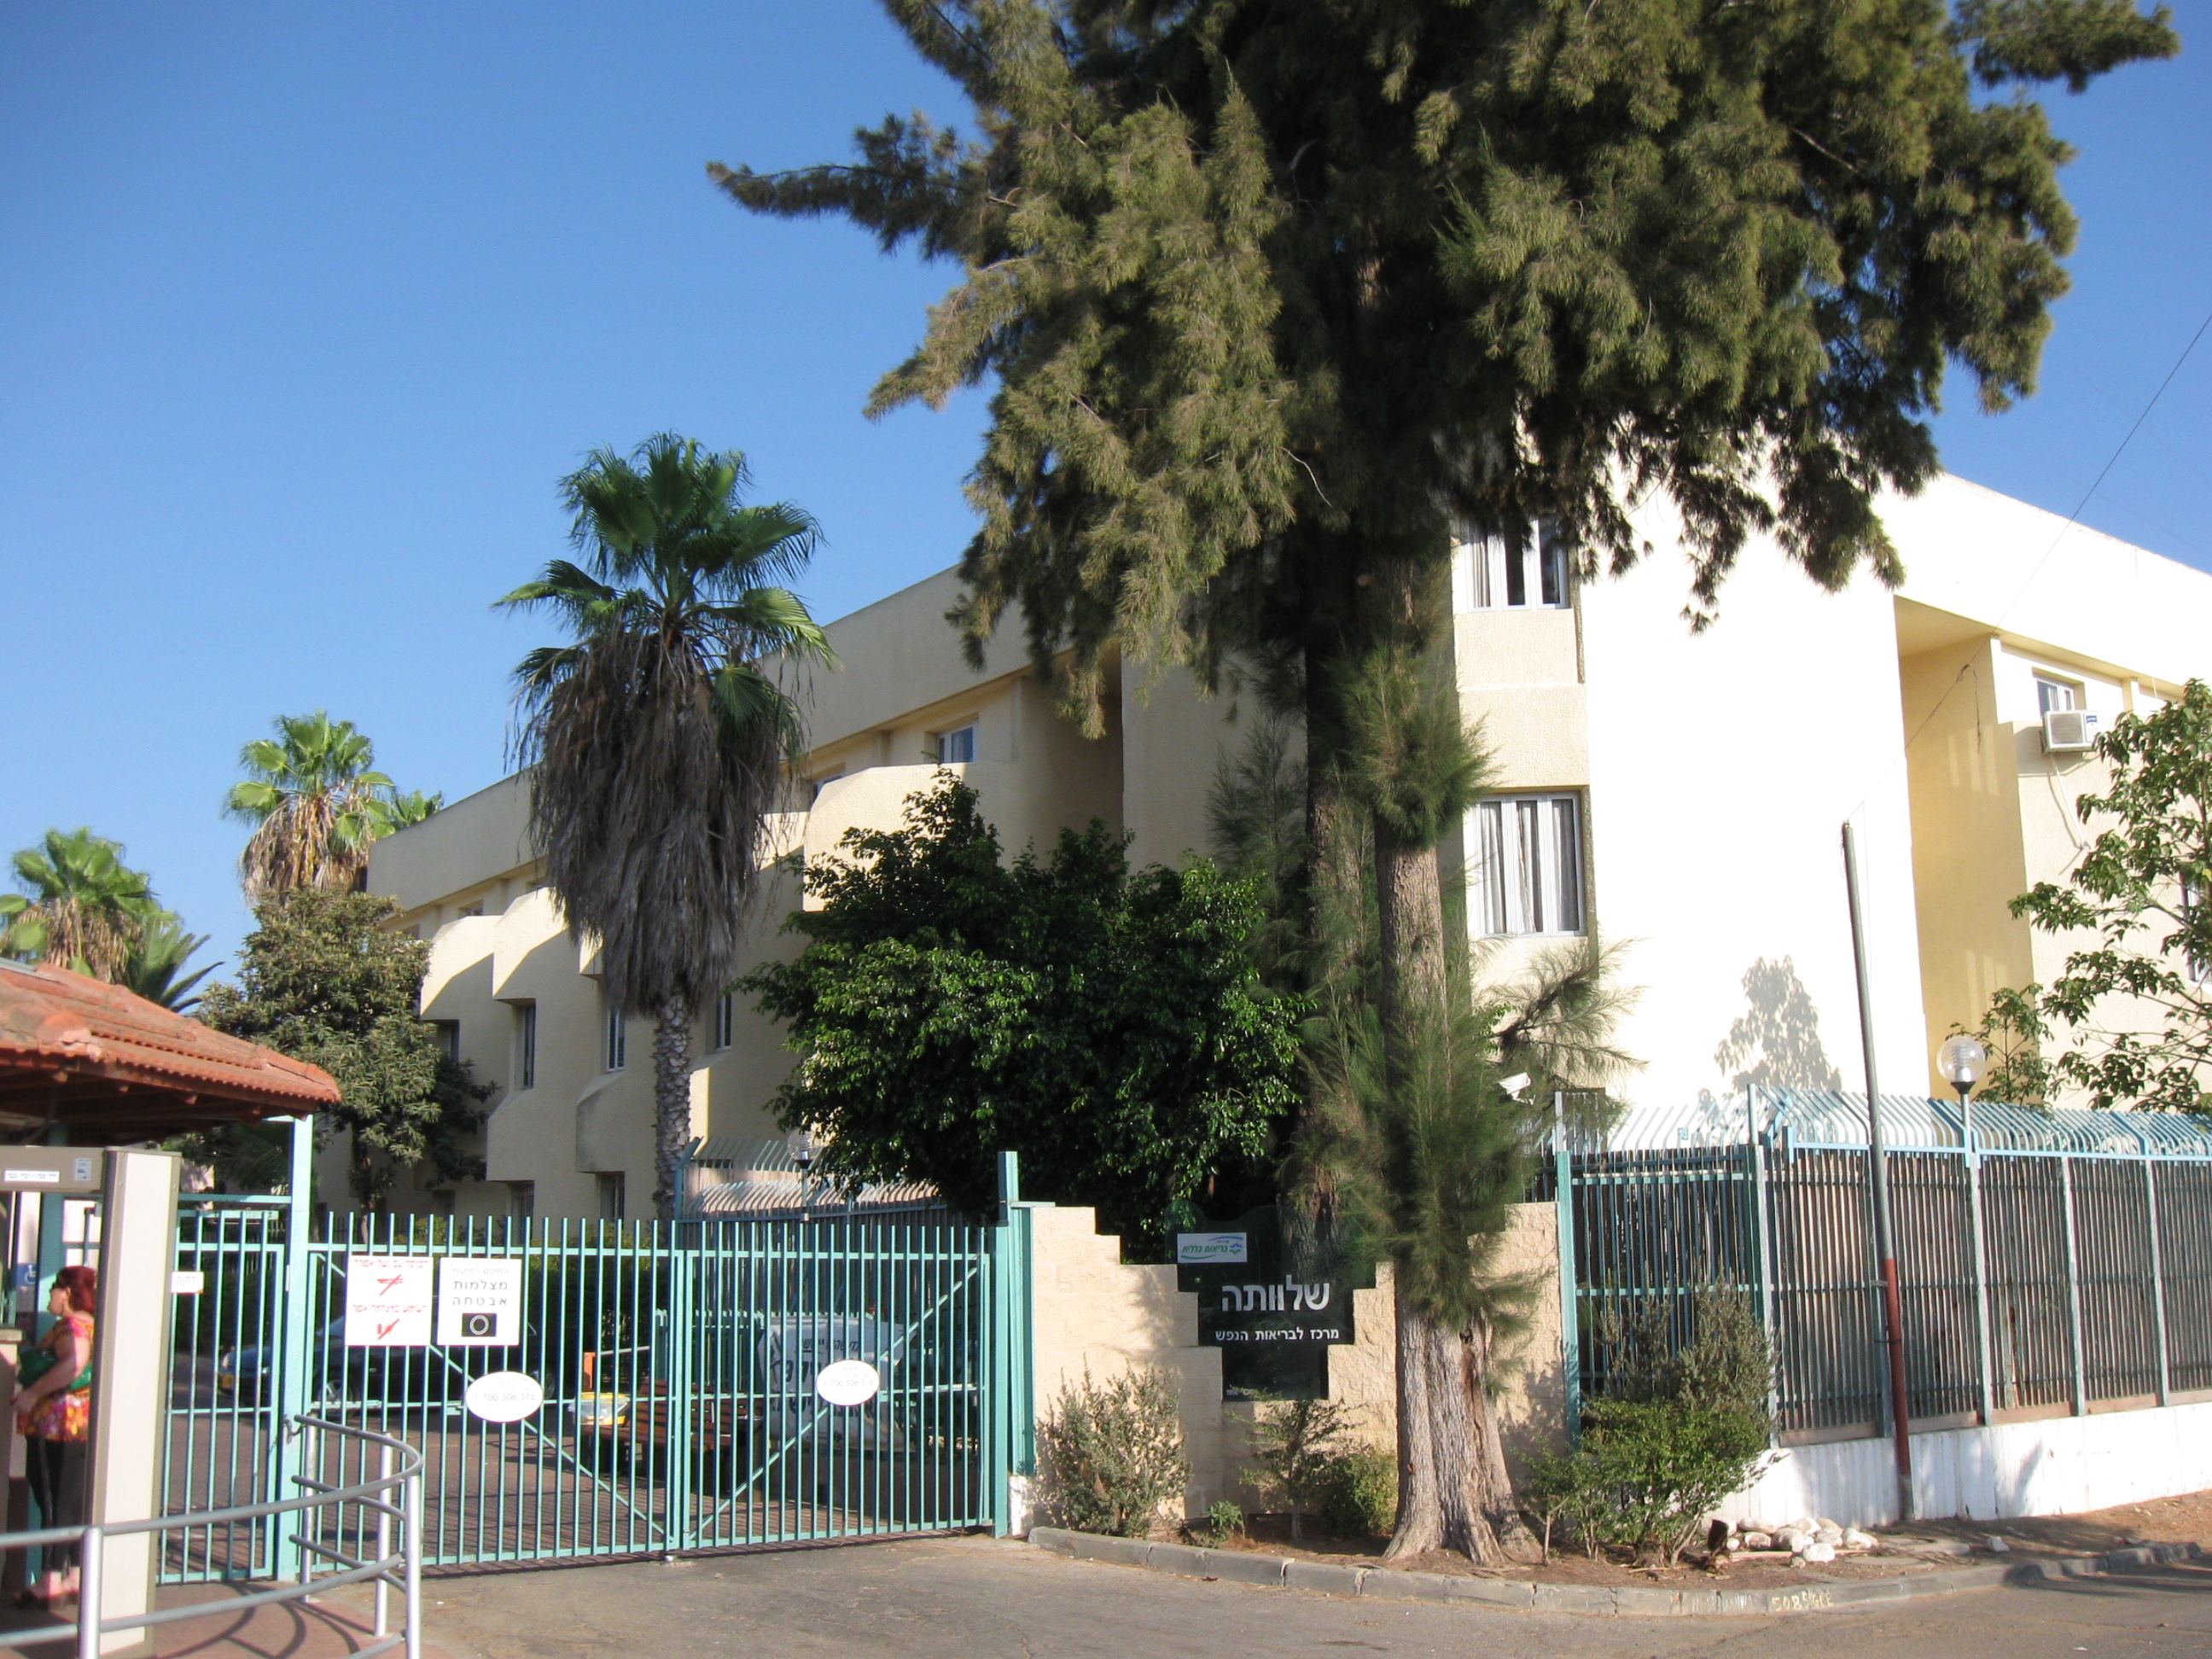 Психиатрические клиники в израиле